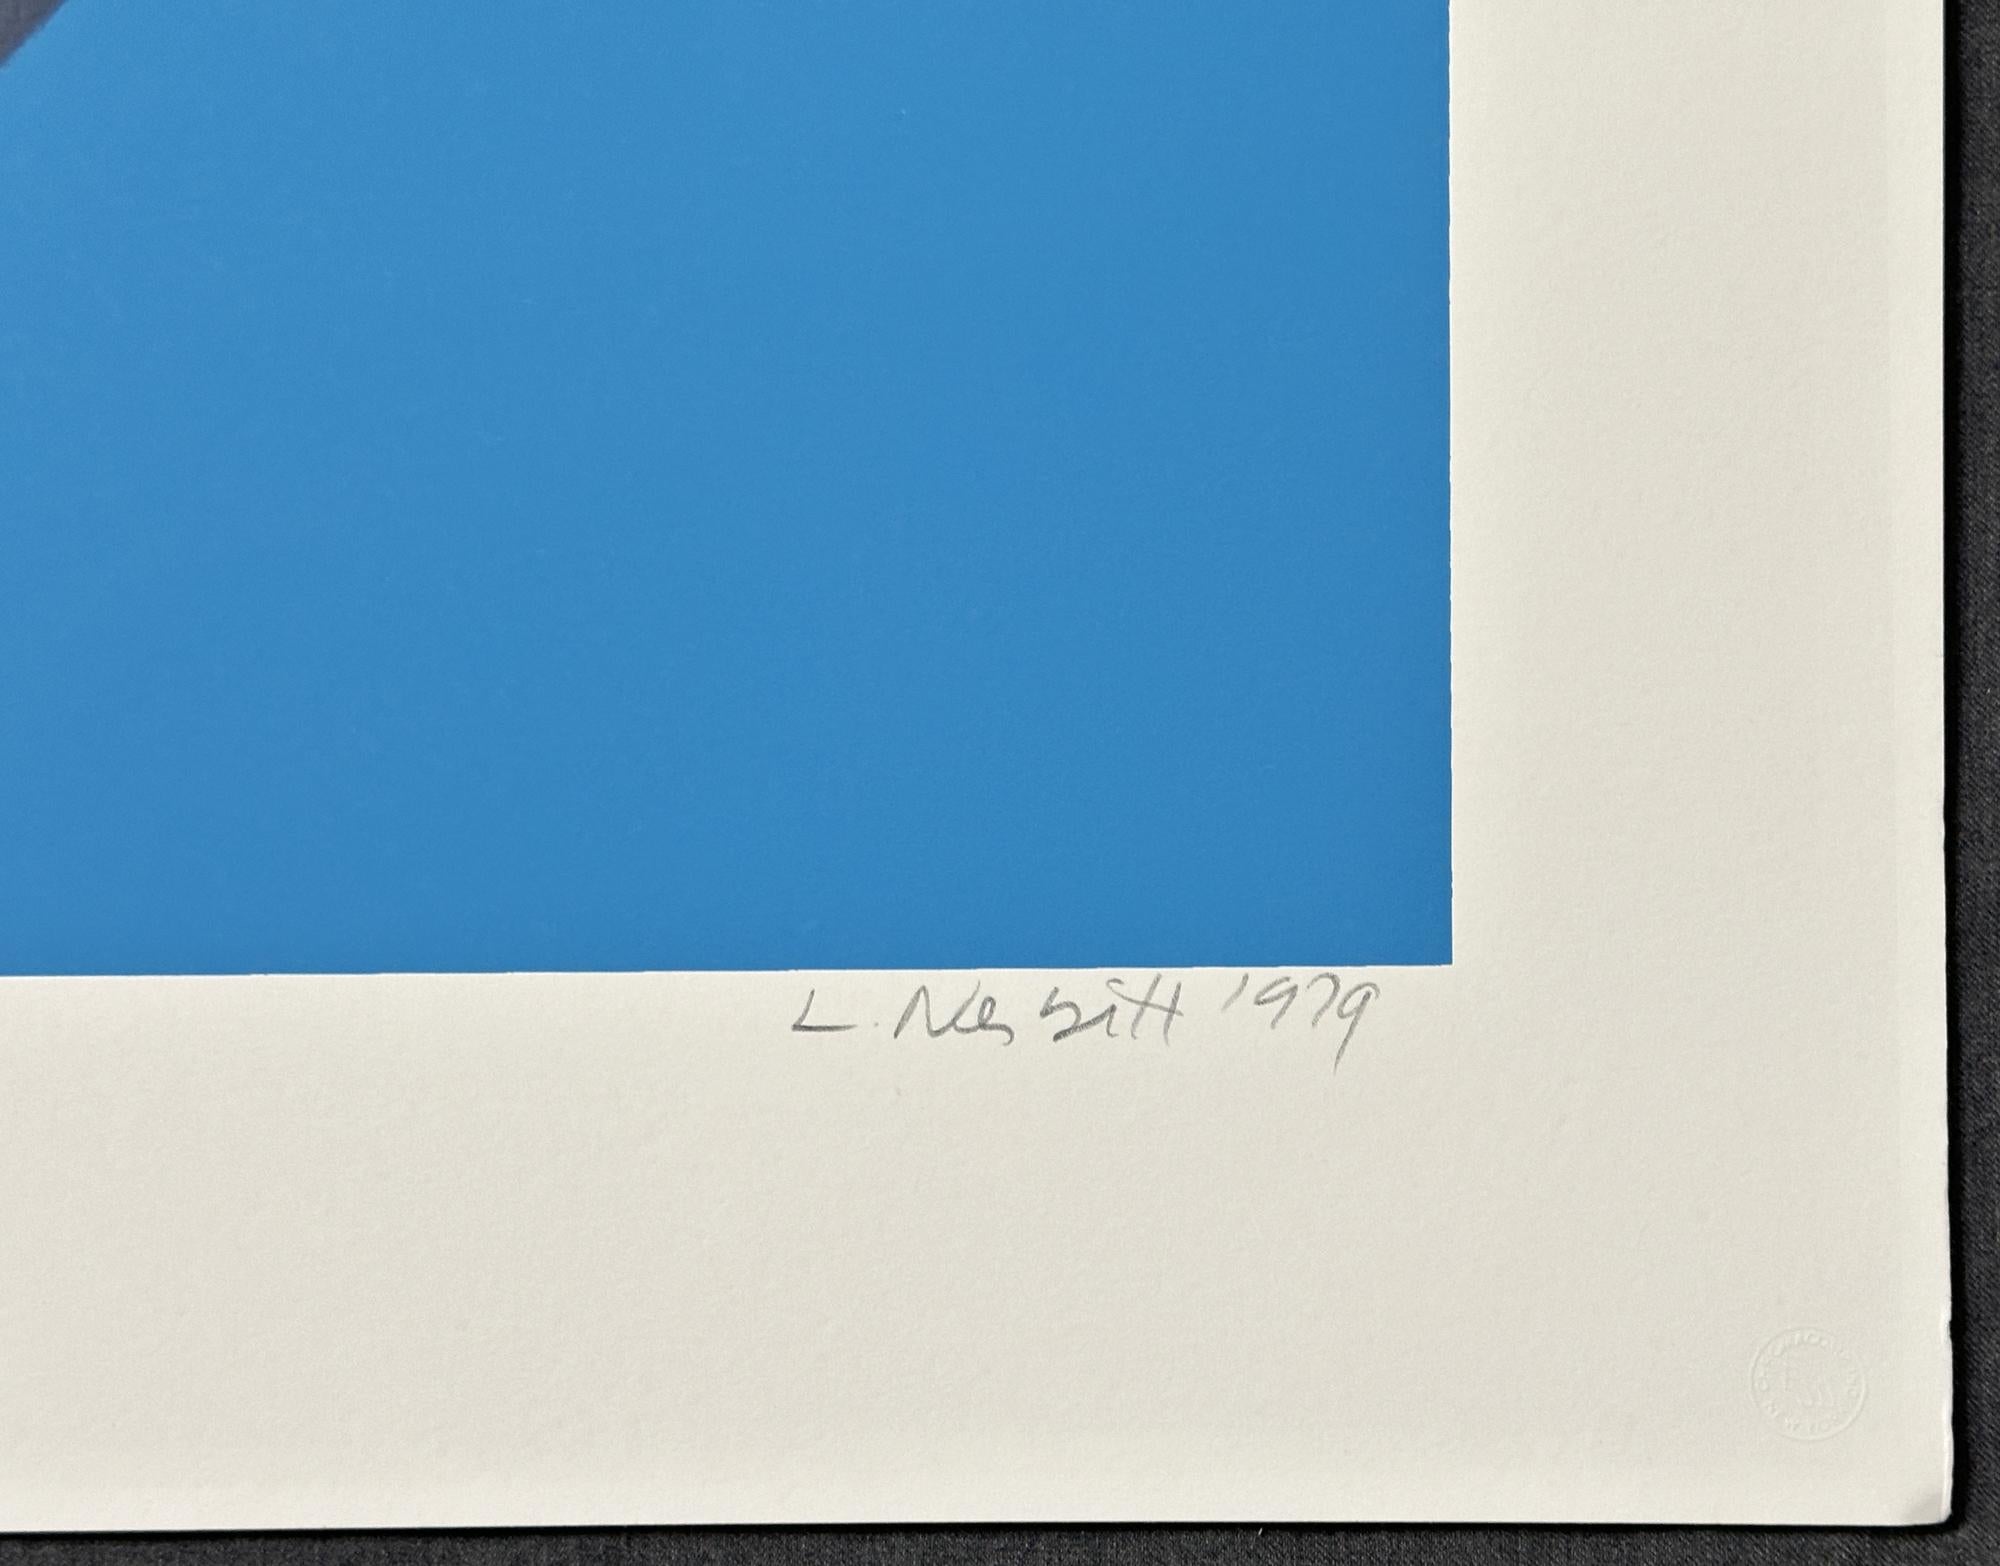 Name des Künstlers: Lowell Nesbitt
Jahr: 1979
Medium Typ: Siebdruck, auf Arches ar incheschival Papier  
Größe-Breite  Größe-Höhe: 24'' x 31½